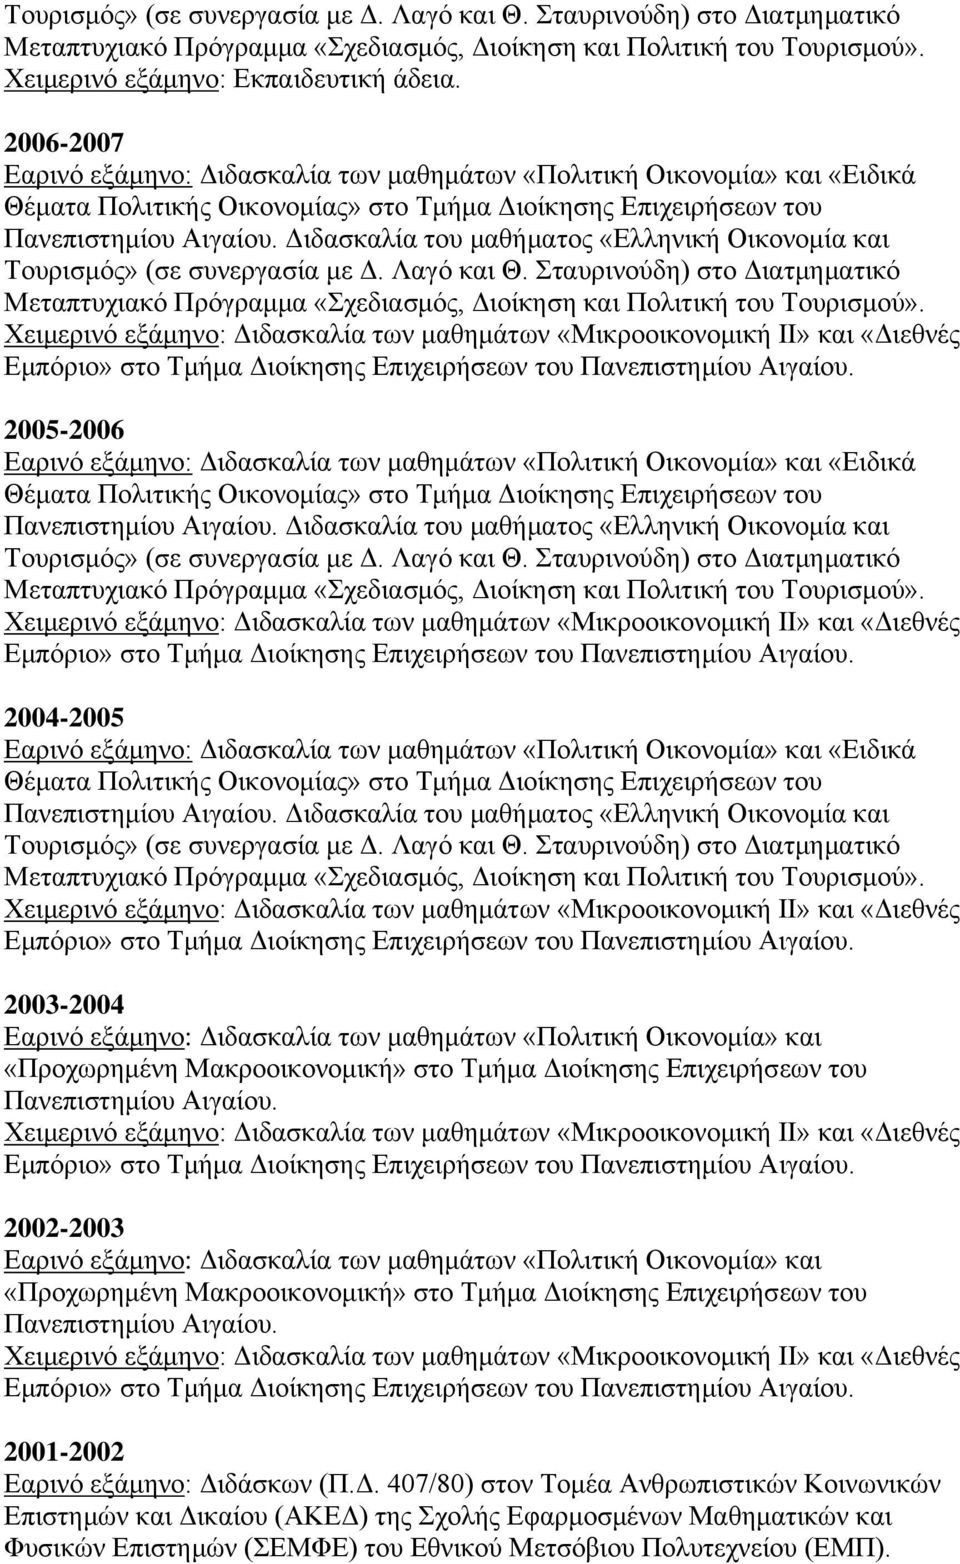 Διδασκαλία του μαθήματος «Ελληνική Οικονομία και Τουρισμός» (σε συνεργασία με Δ. Λαγό και Θ. Σταυρινούδη) στο Διατμηματικό Μεταπτυχιακό Πρόγραμμα «Σχεδιασμός, Διοίκηση και Πολιτική του Τουρισμού».